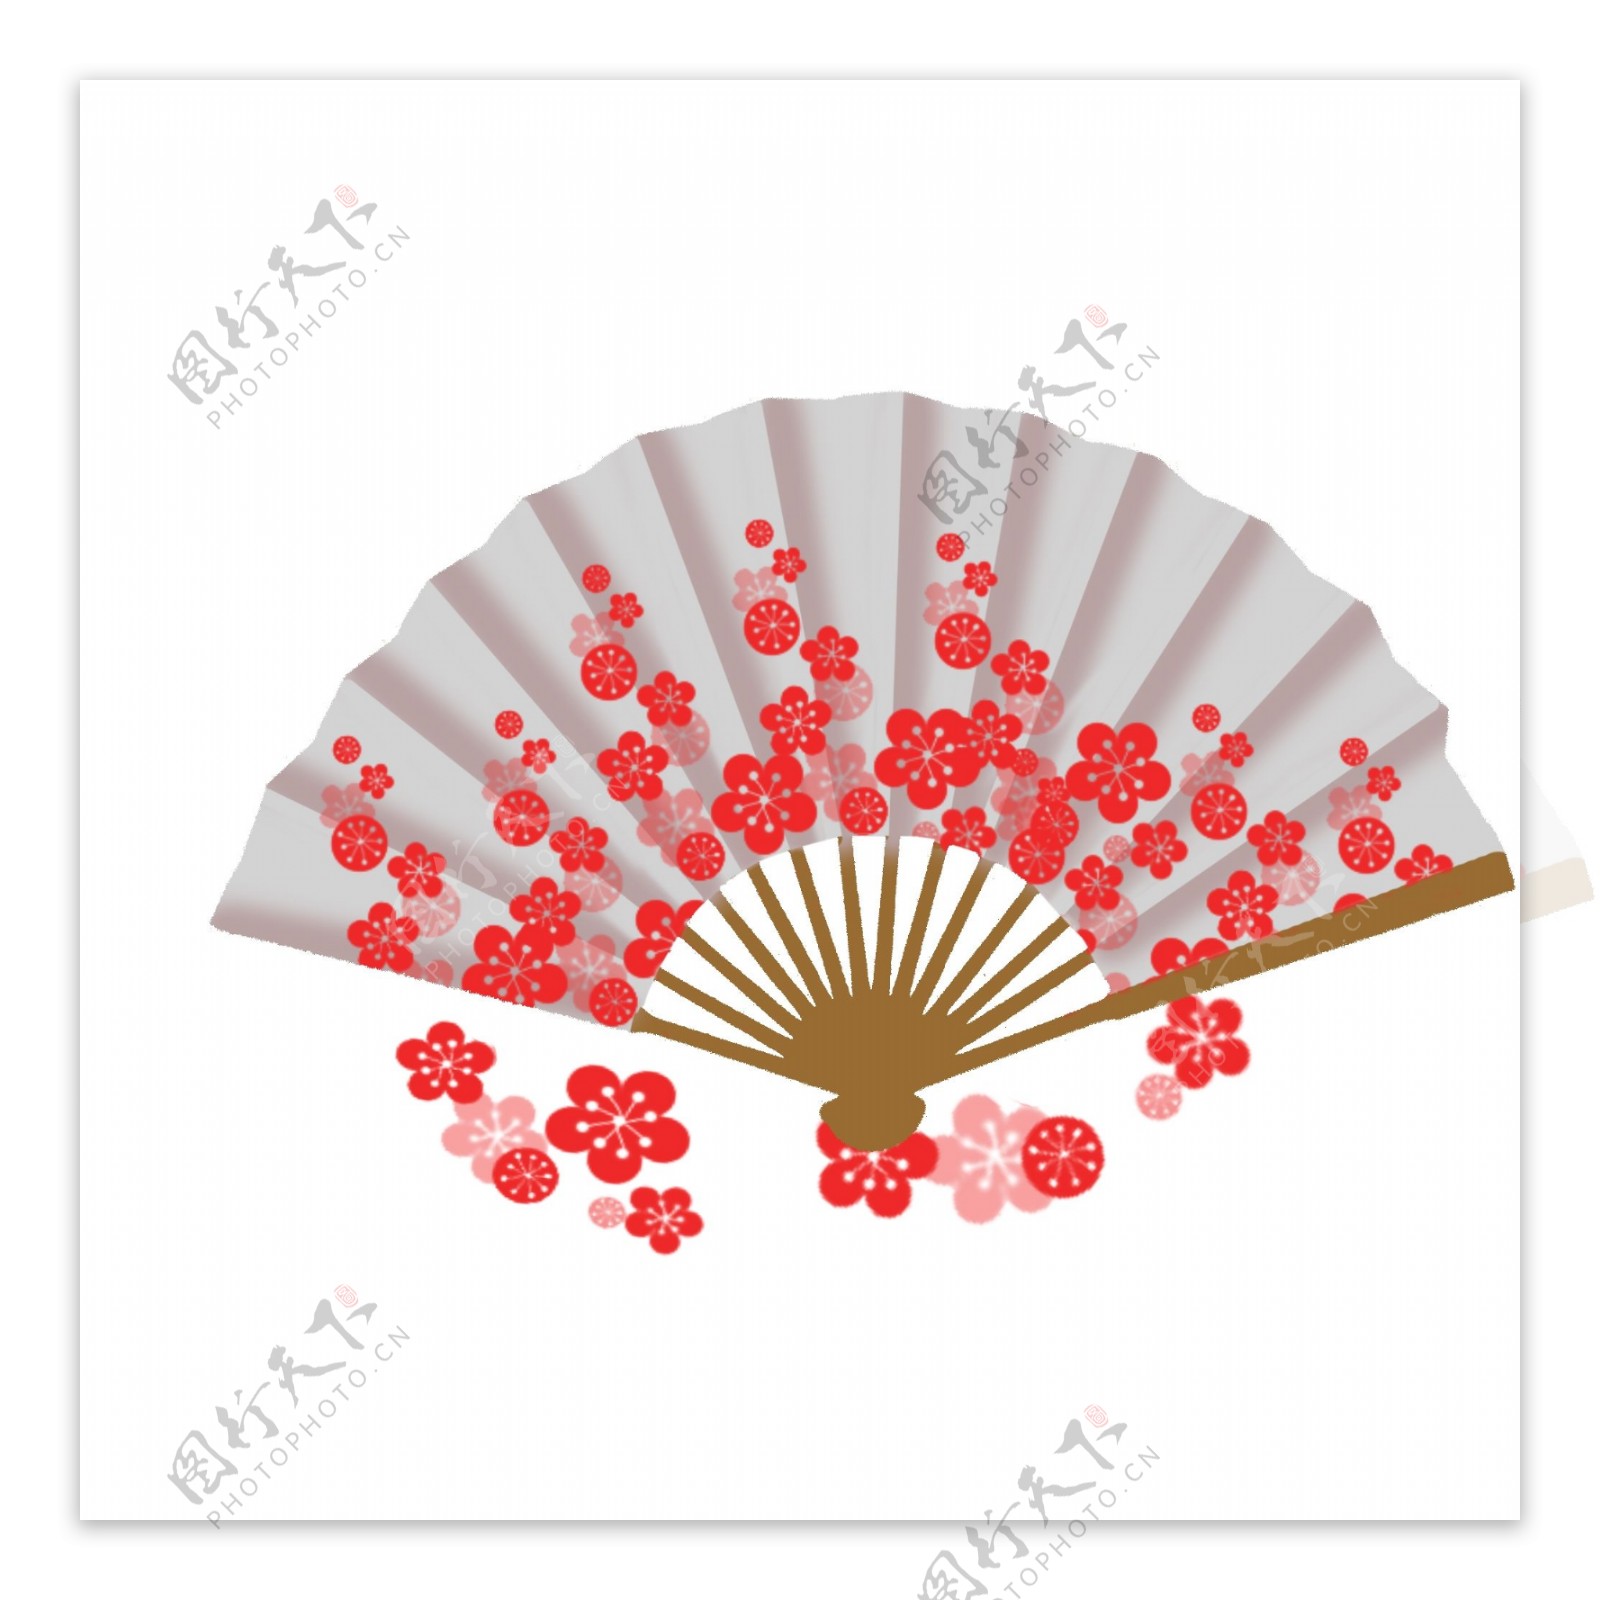 手绘中国风梅花印花折扇可商用元素